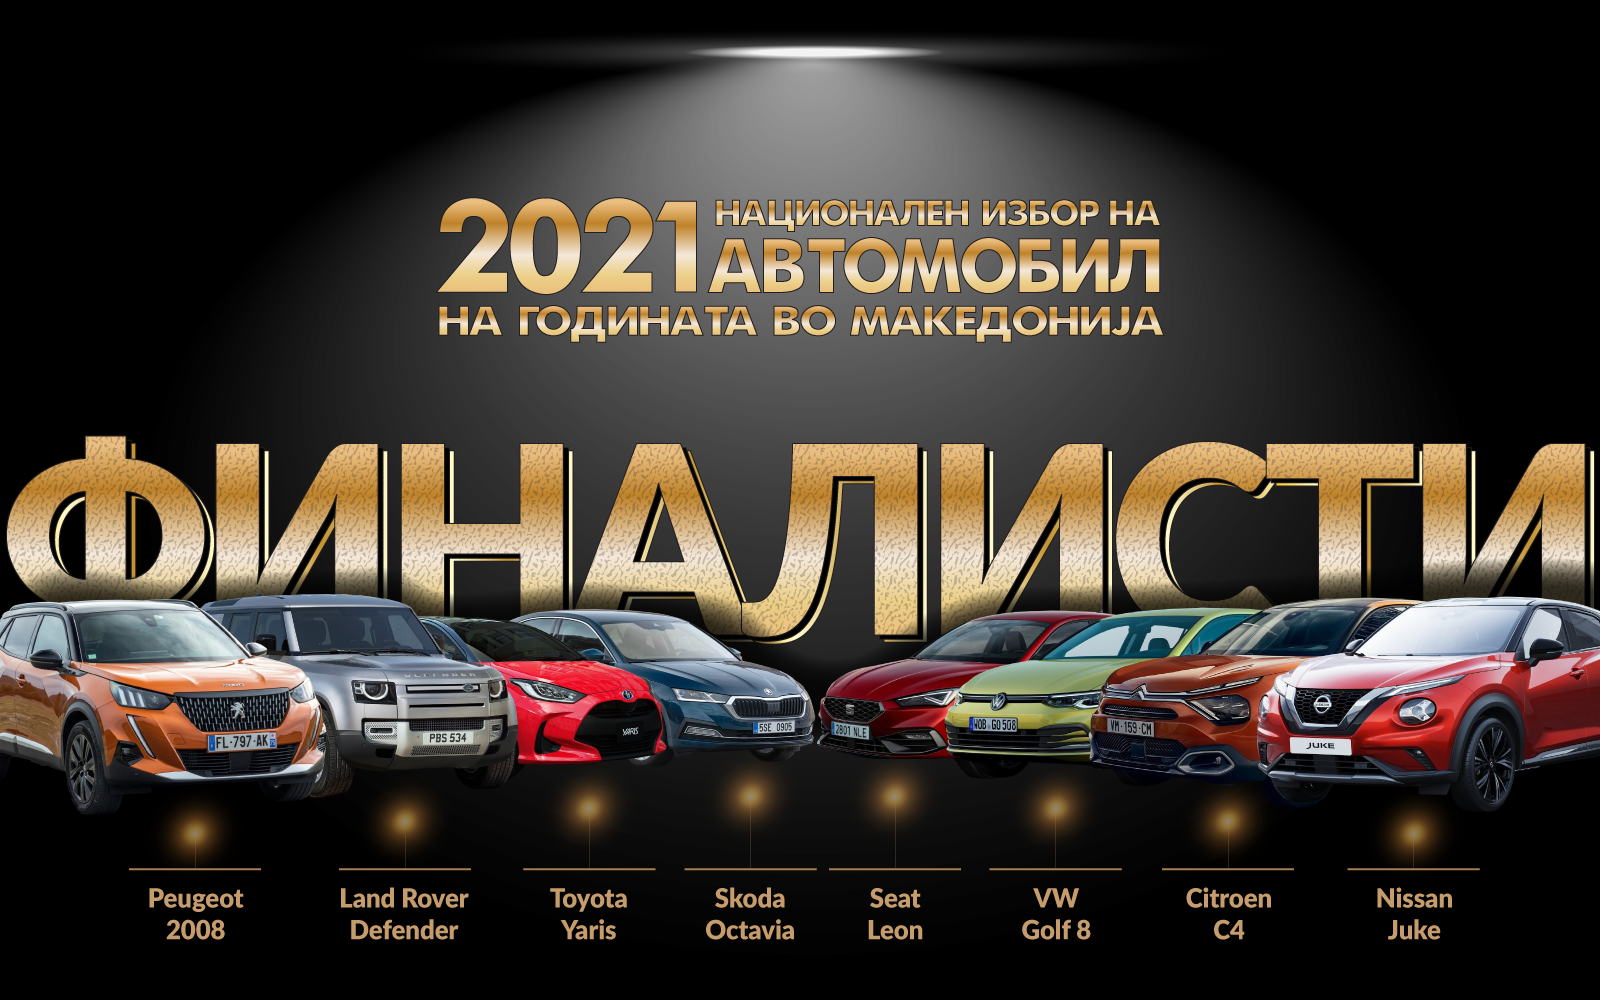 Избор на автомобил на годината во Македонија